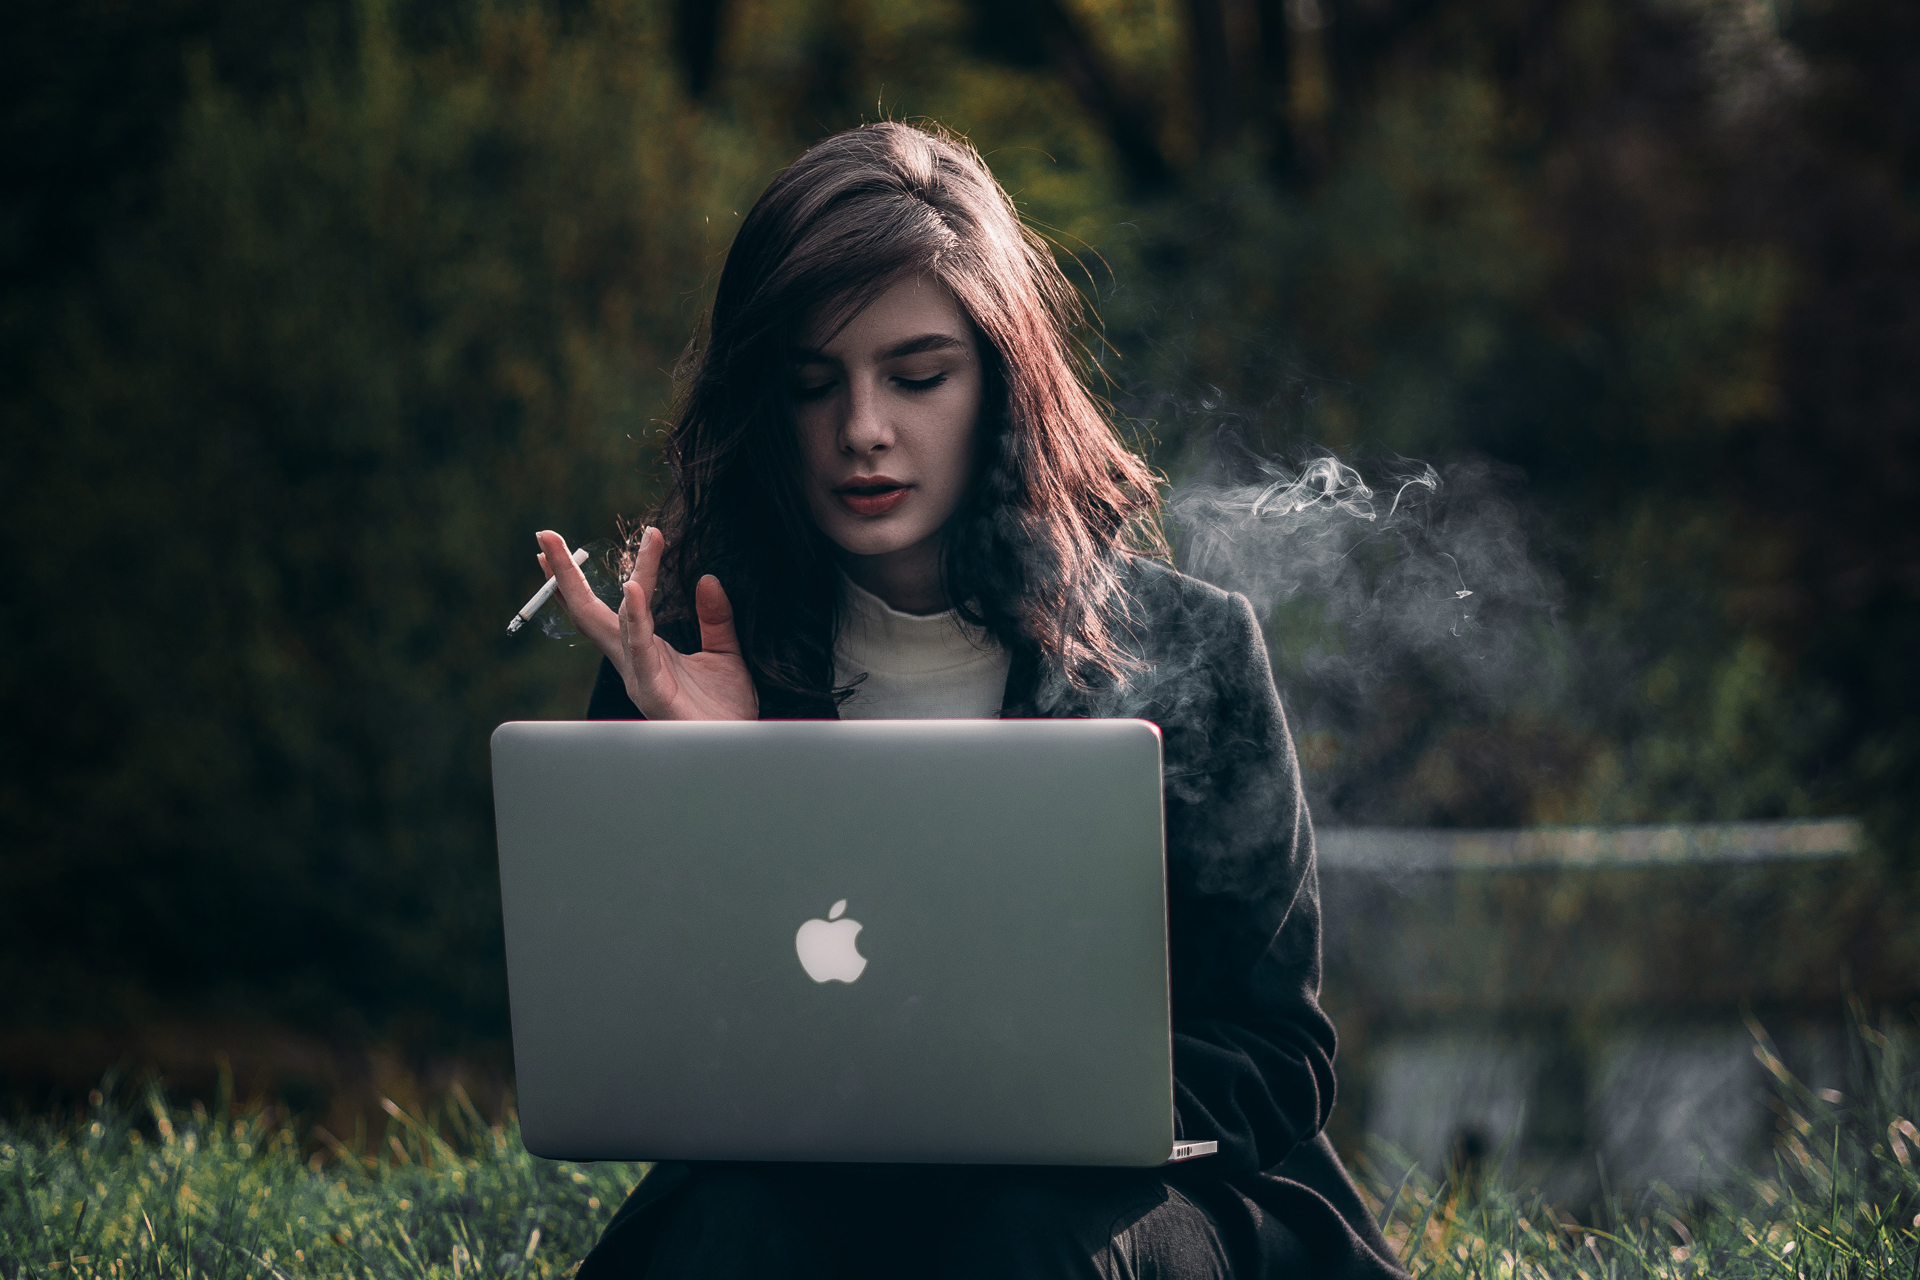 Eine Frau sitzt mit einem Laptop im Gras und raucht